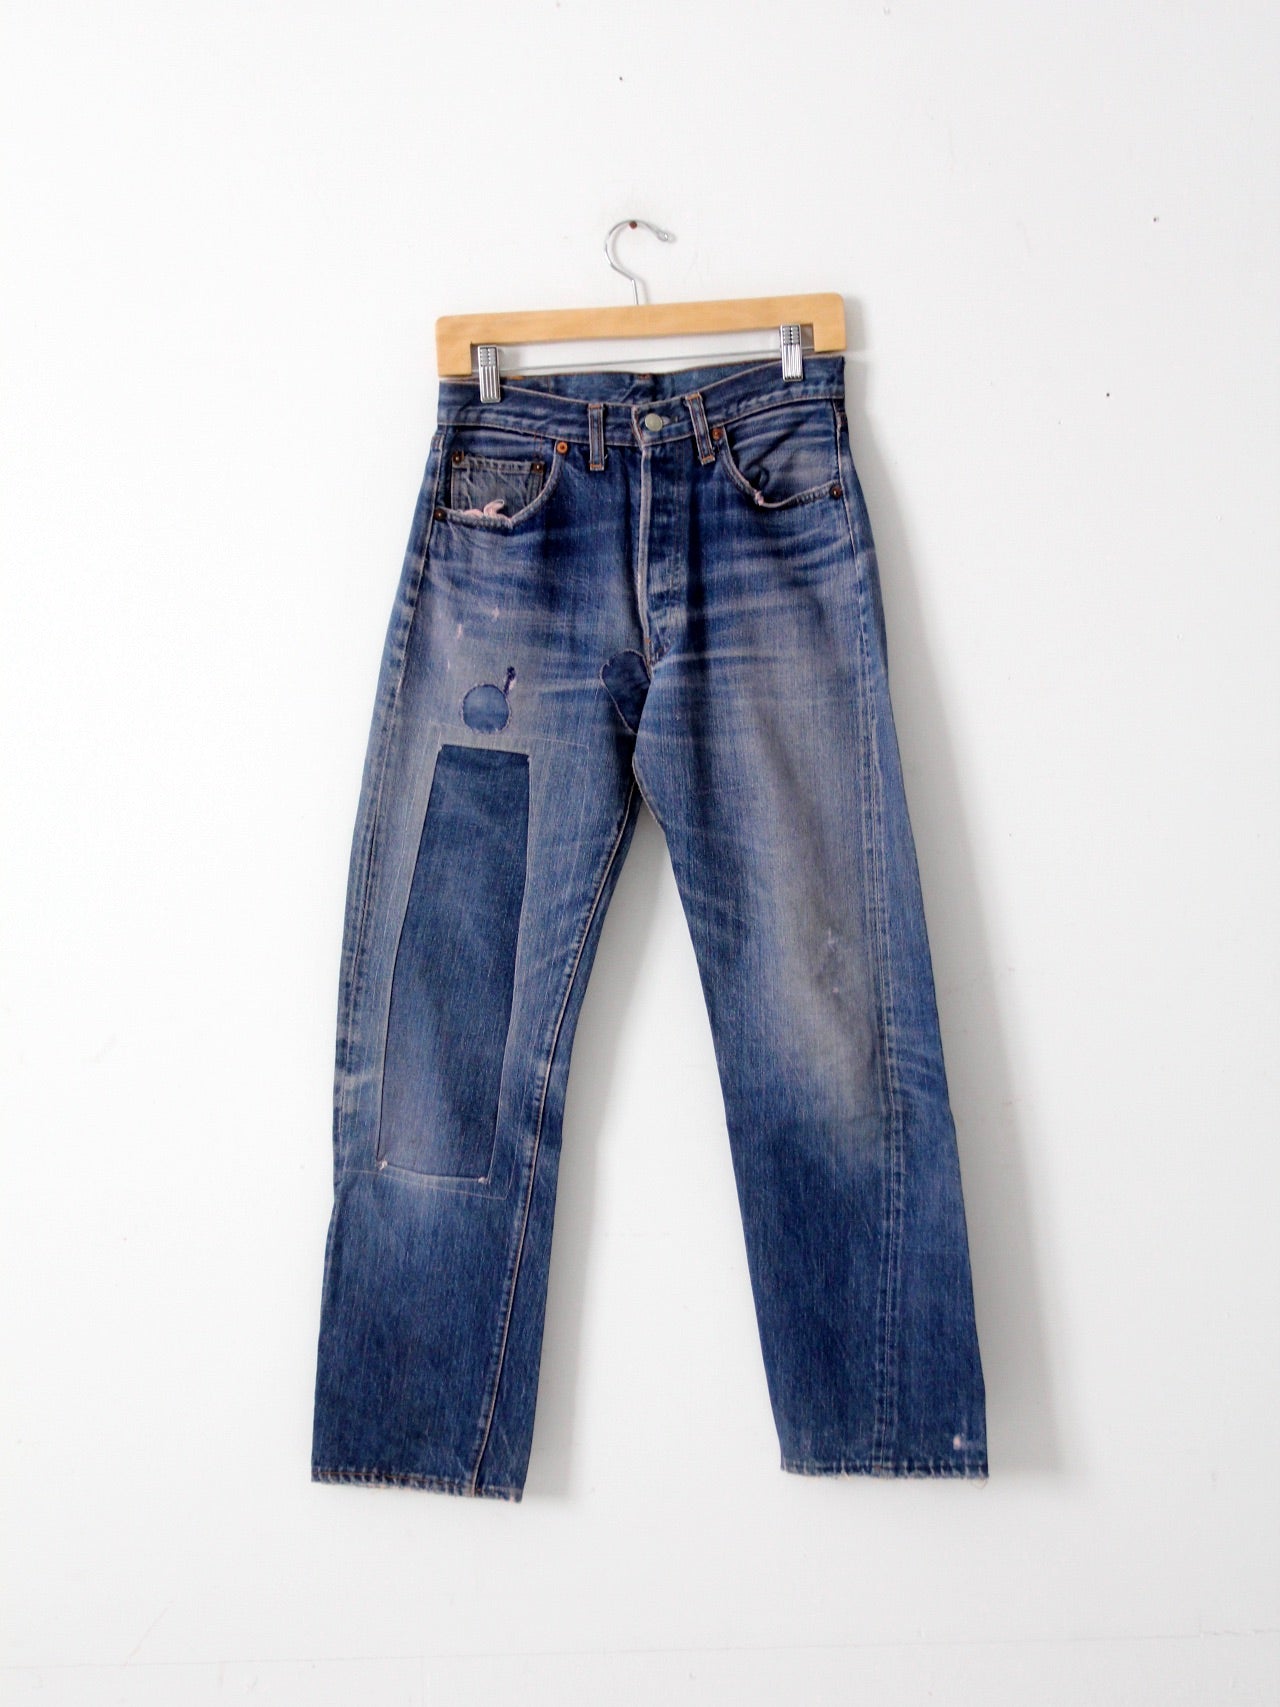 vintage Levis red line selvedge jeans, 28 x 31 – 86 Vintage